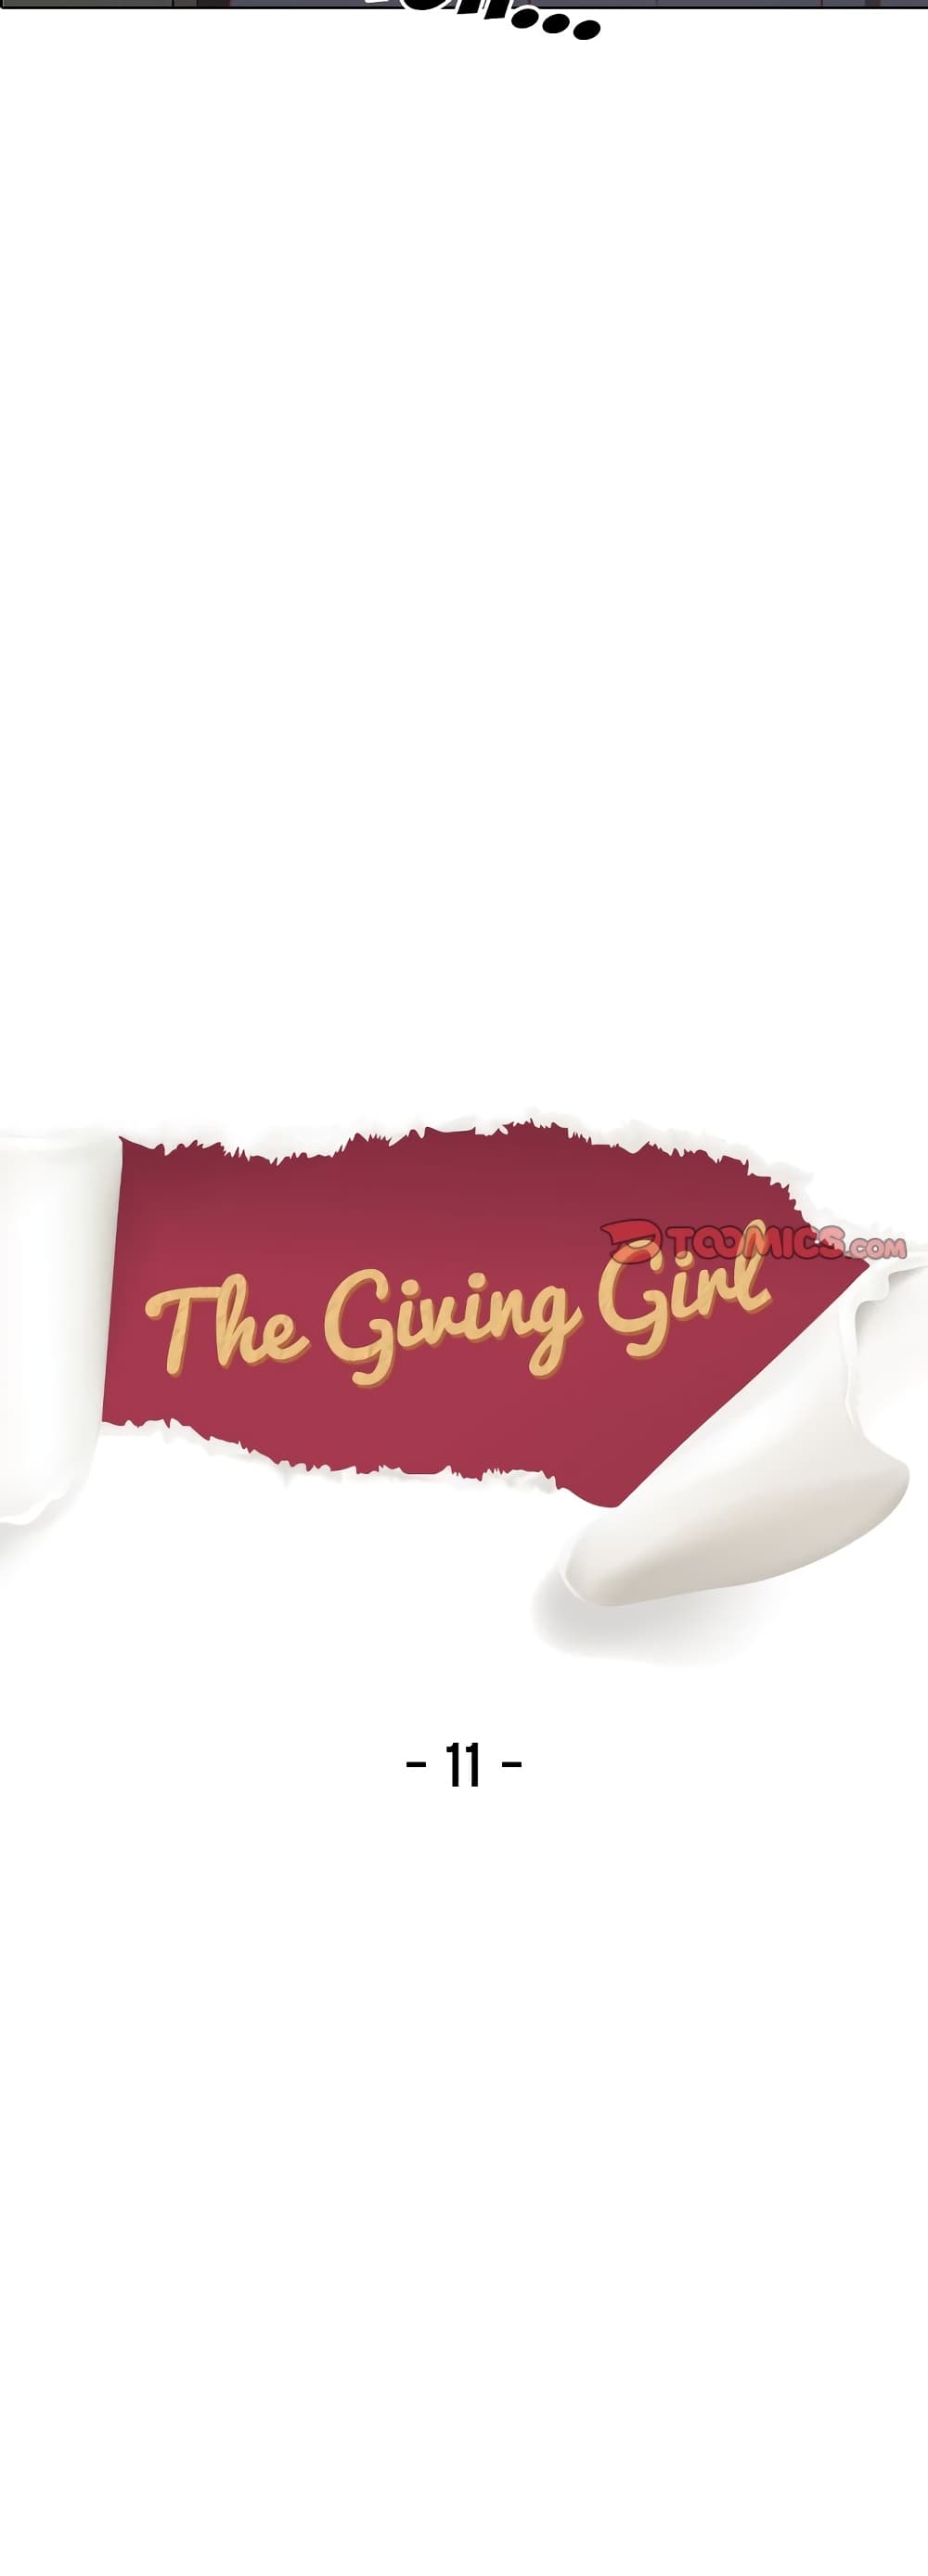 Giving Girl 11 05